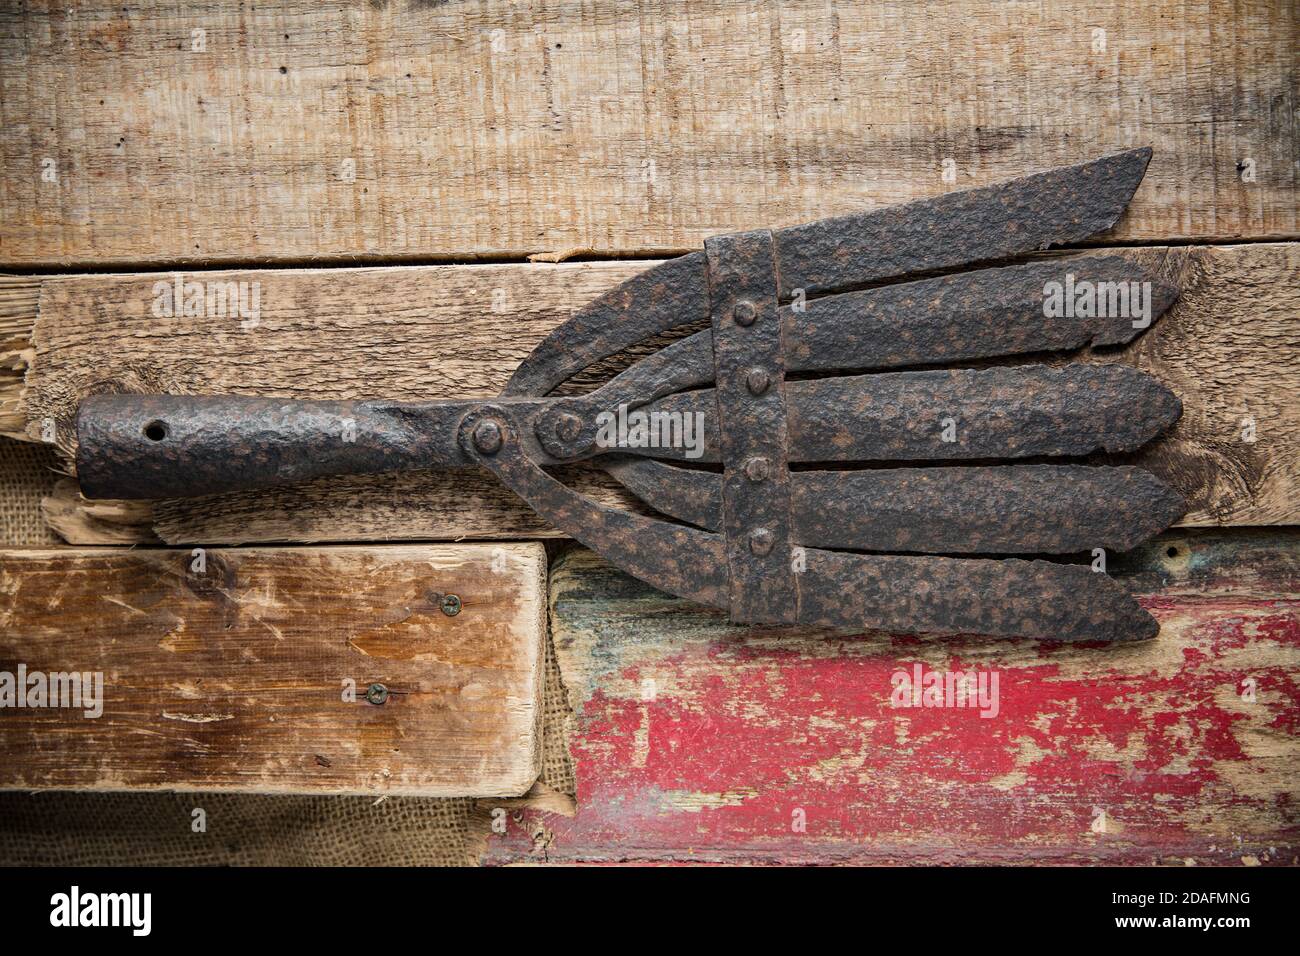 Une vieille lance d'anguilles en métal conçue pour capturer des anguilles européennes, Anguilla anguilla, photographiée sur fond de bois. Les lances à anguilles étaient connues par plusieurs n Banque D'Images